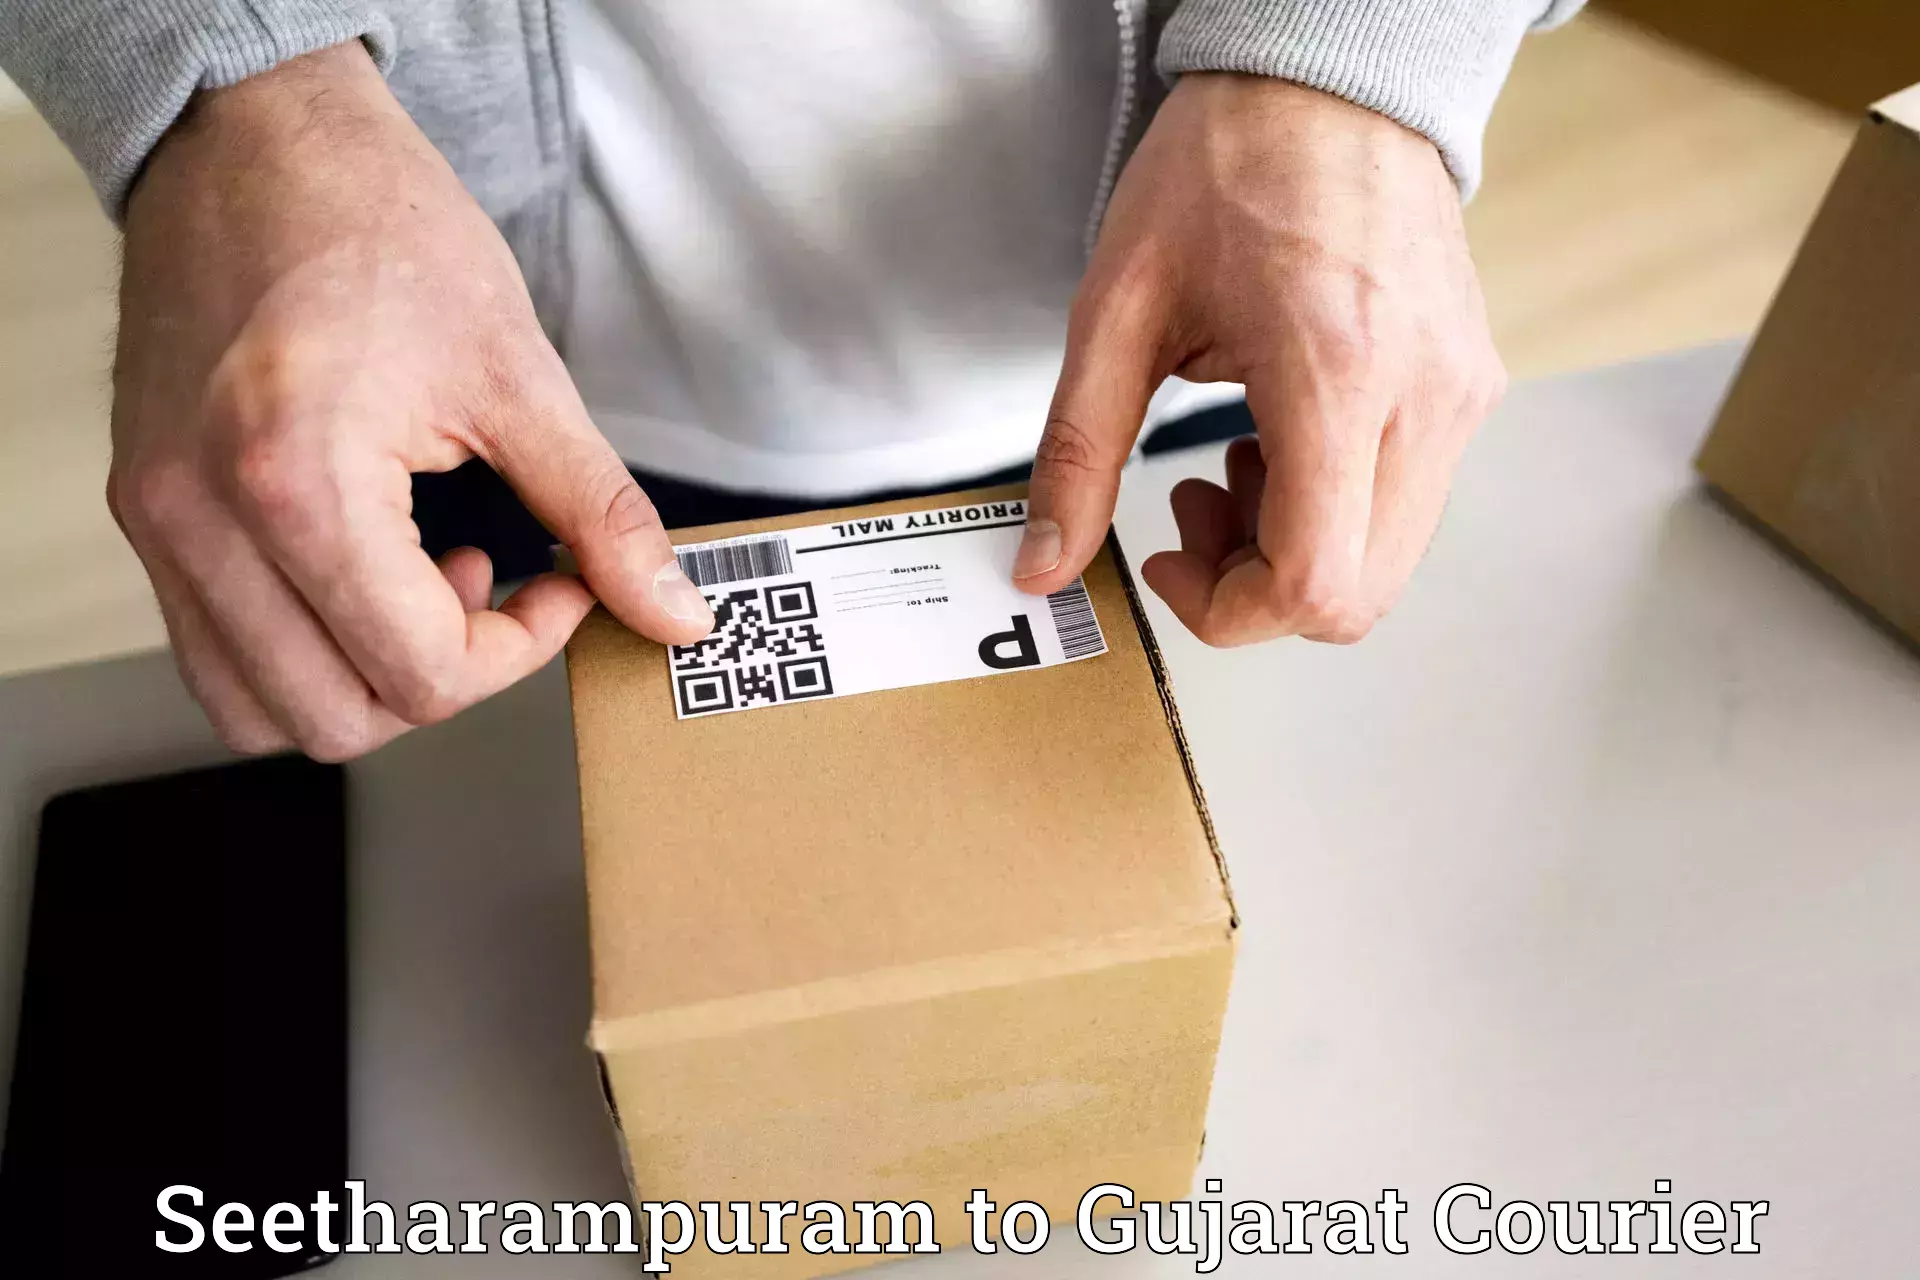 Express shipping Seetharampuram to Patan Gujarat